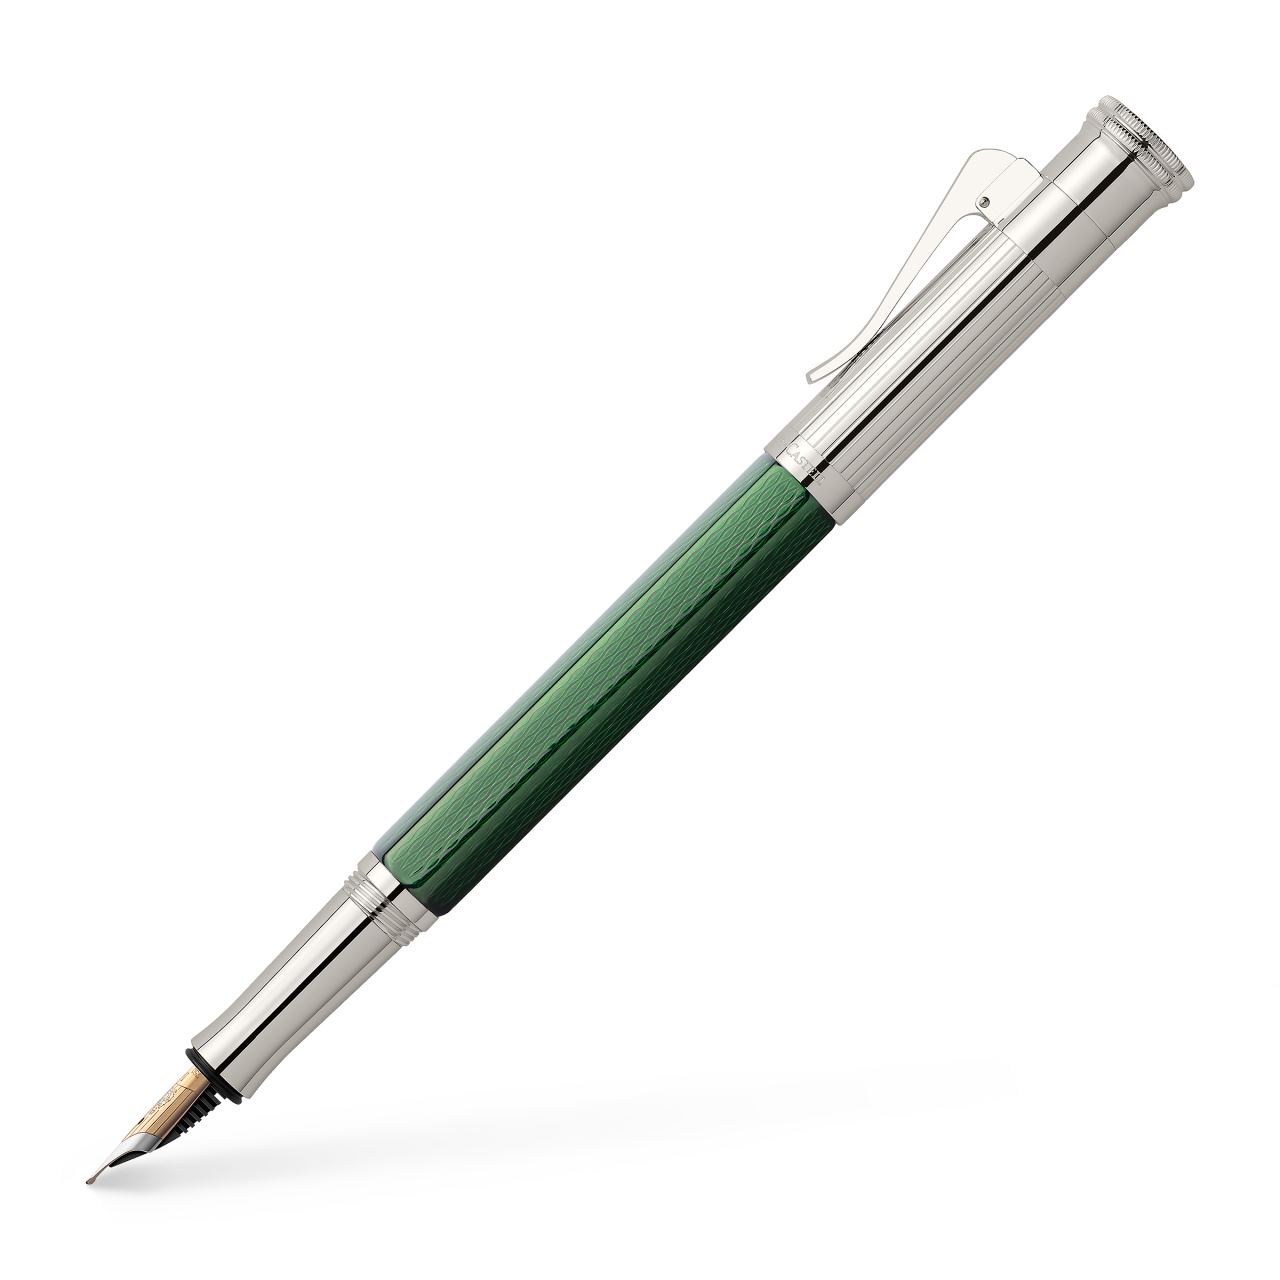 Graf-von-Faber-Castell - Fountain pen Limited Edition Heritage Alexander - Fine